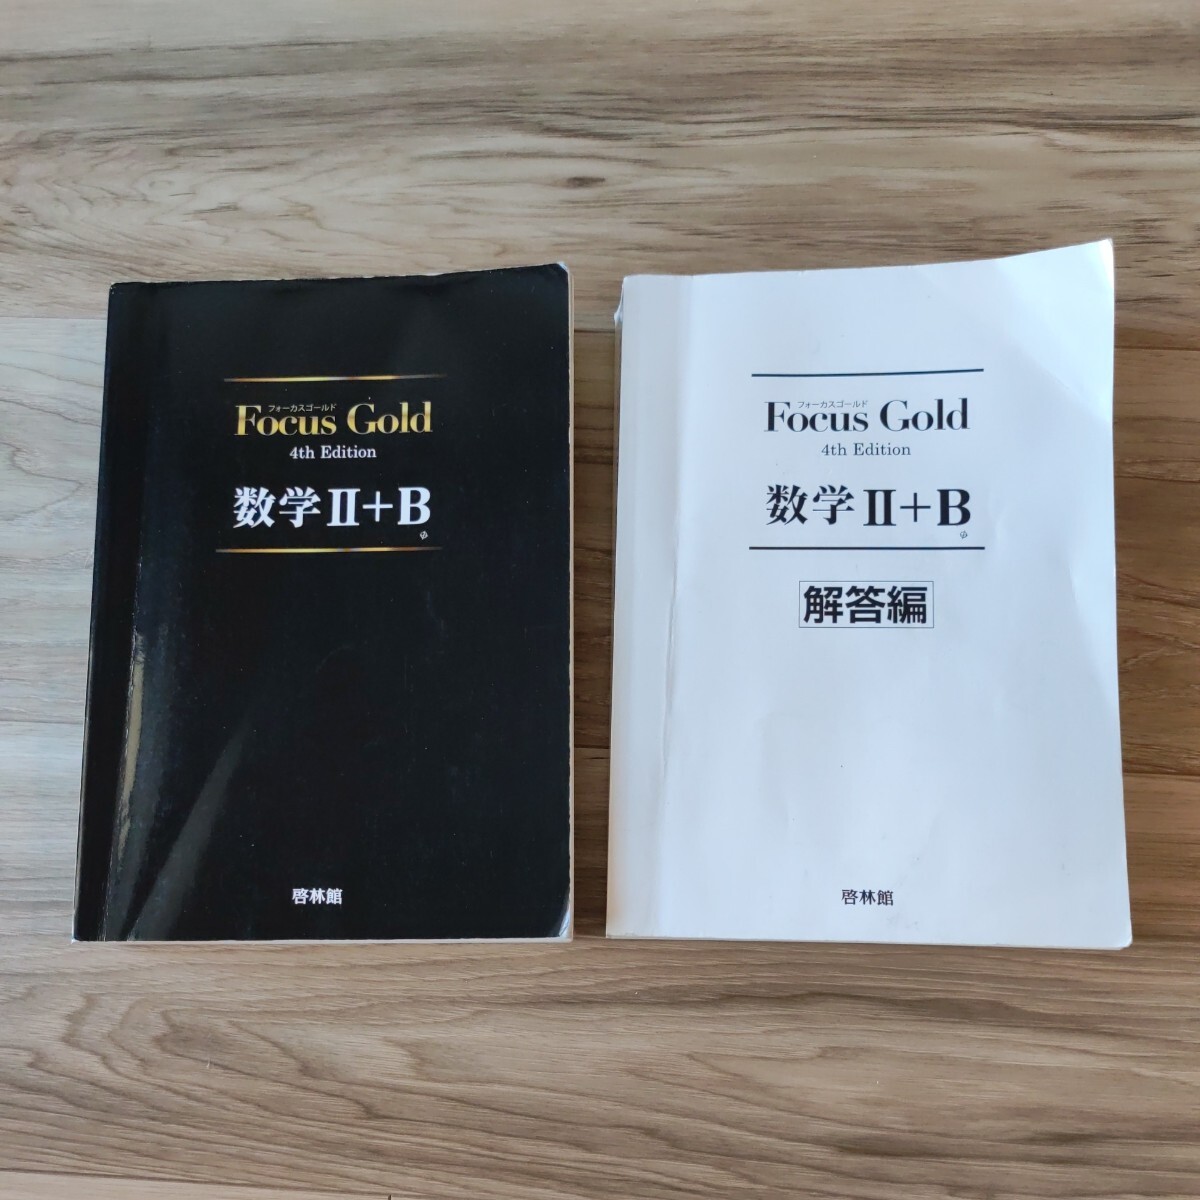 Focus Gold フォーカスゴールド 数学II+B 解答付き 4th Edition 美品